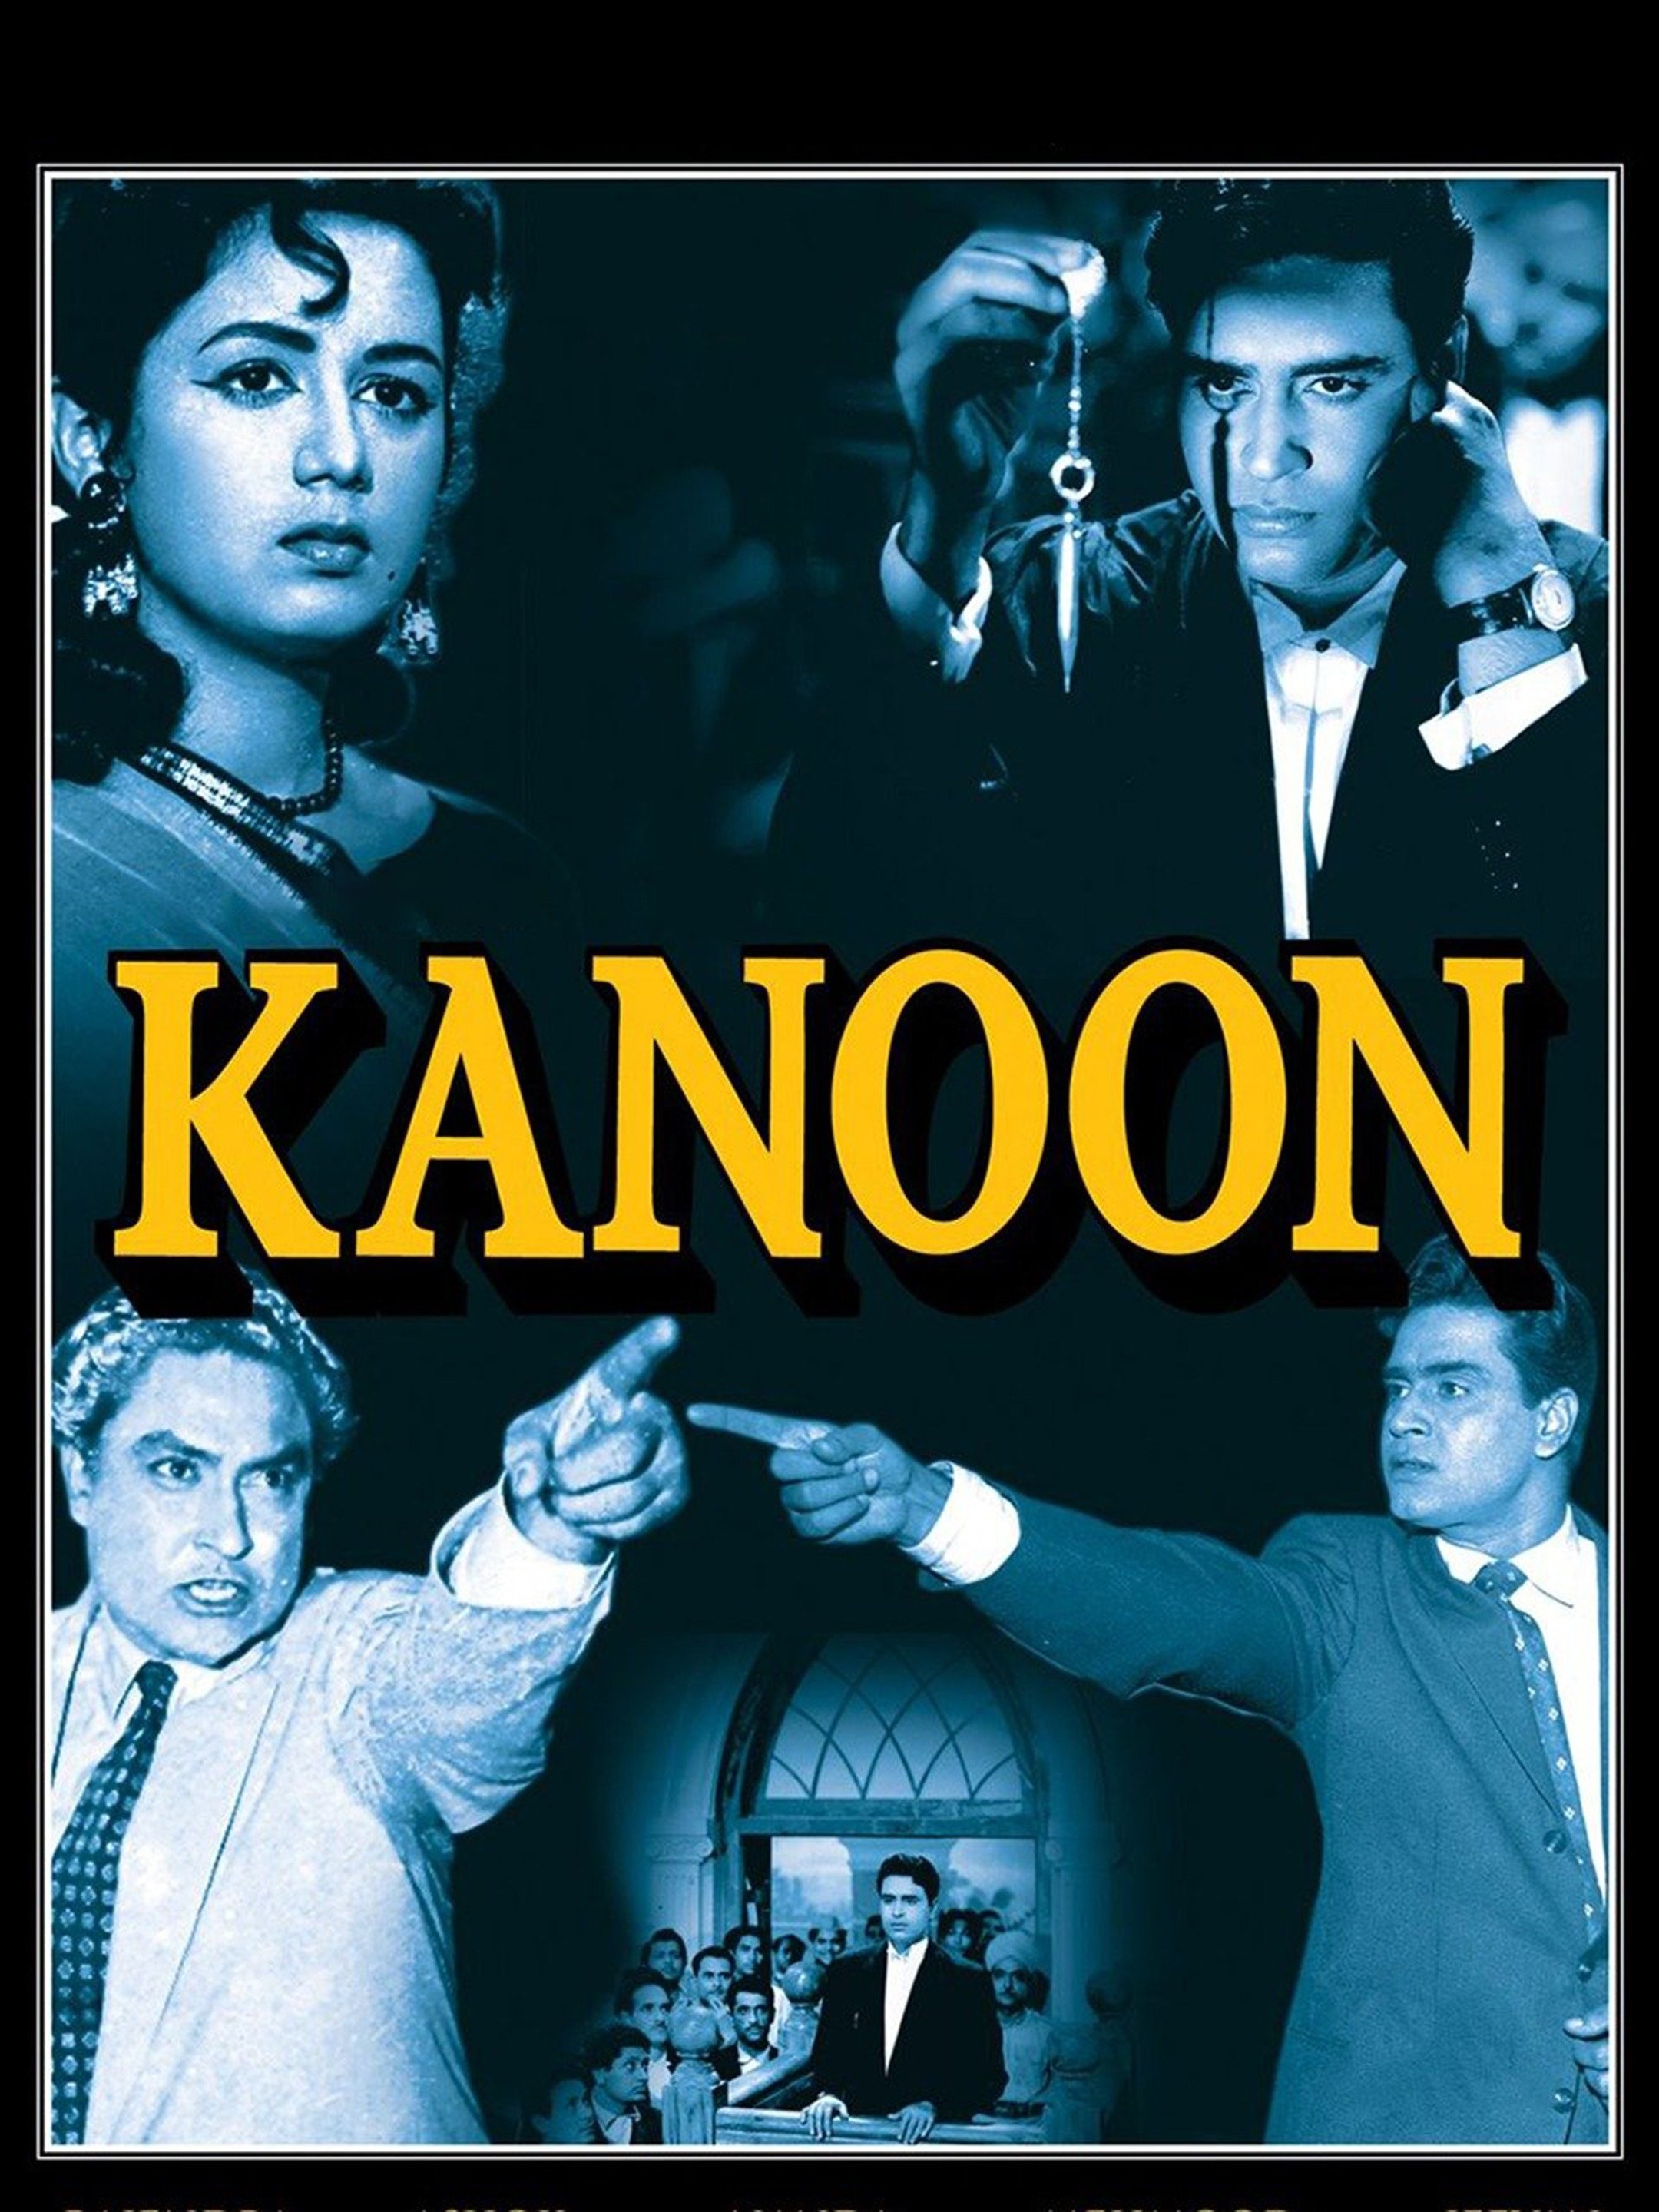 Kanoon hindi movie